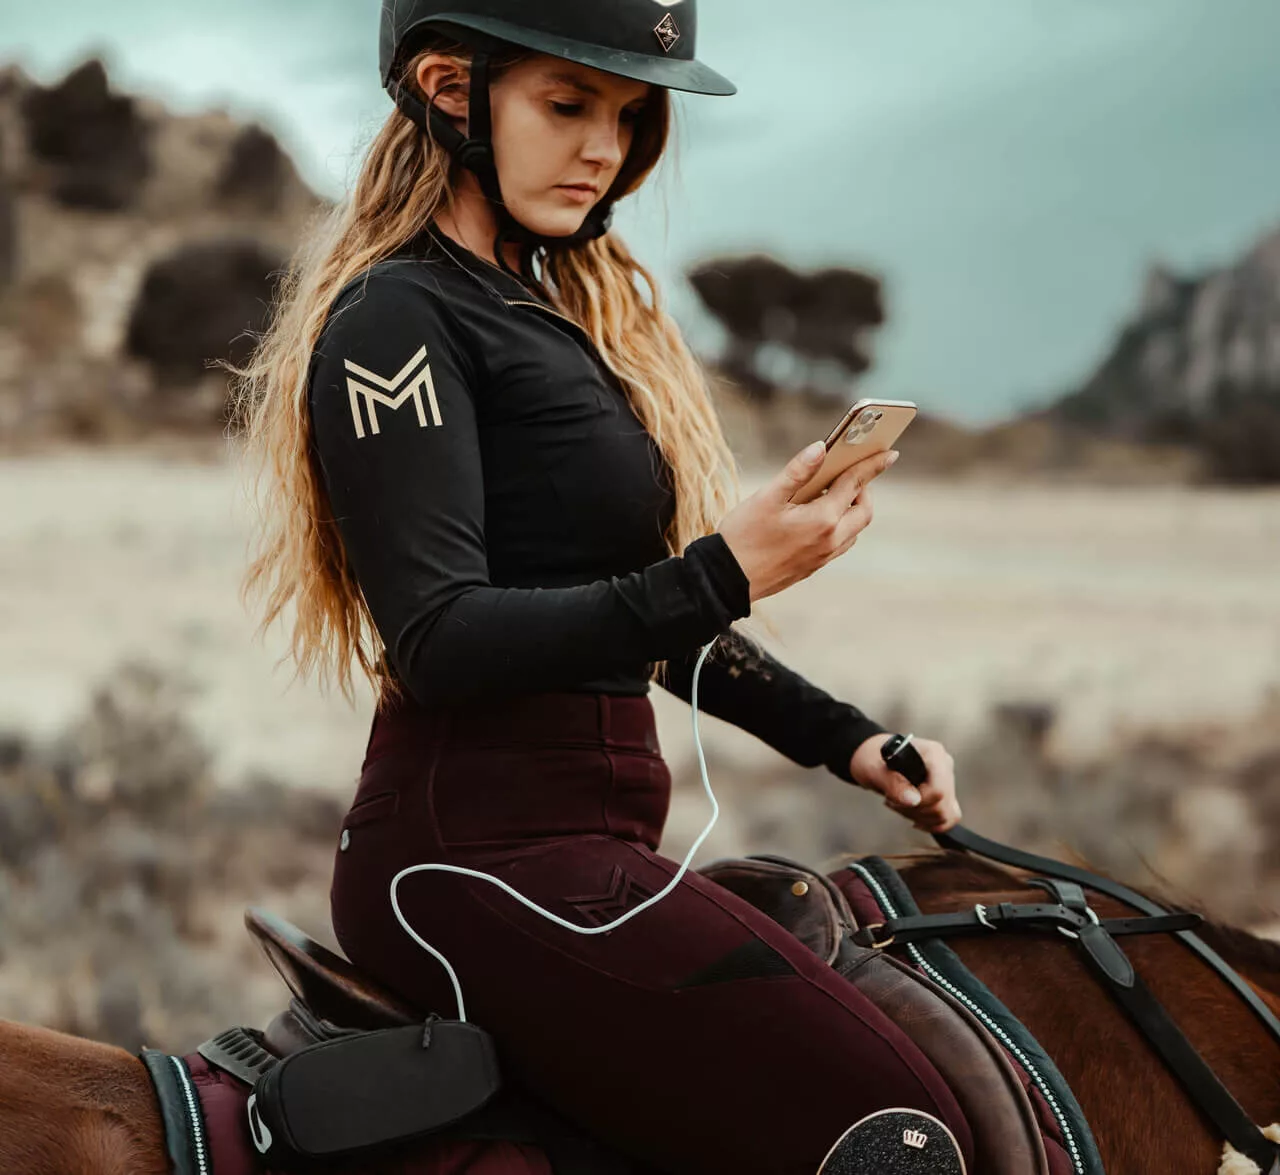 Une cavalier sur sont cheval avec un telephone en main